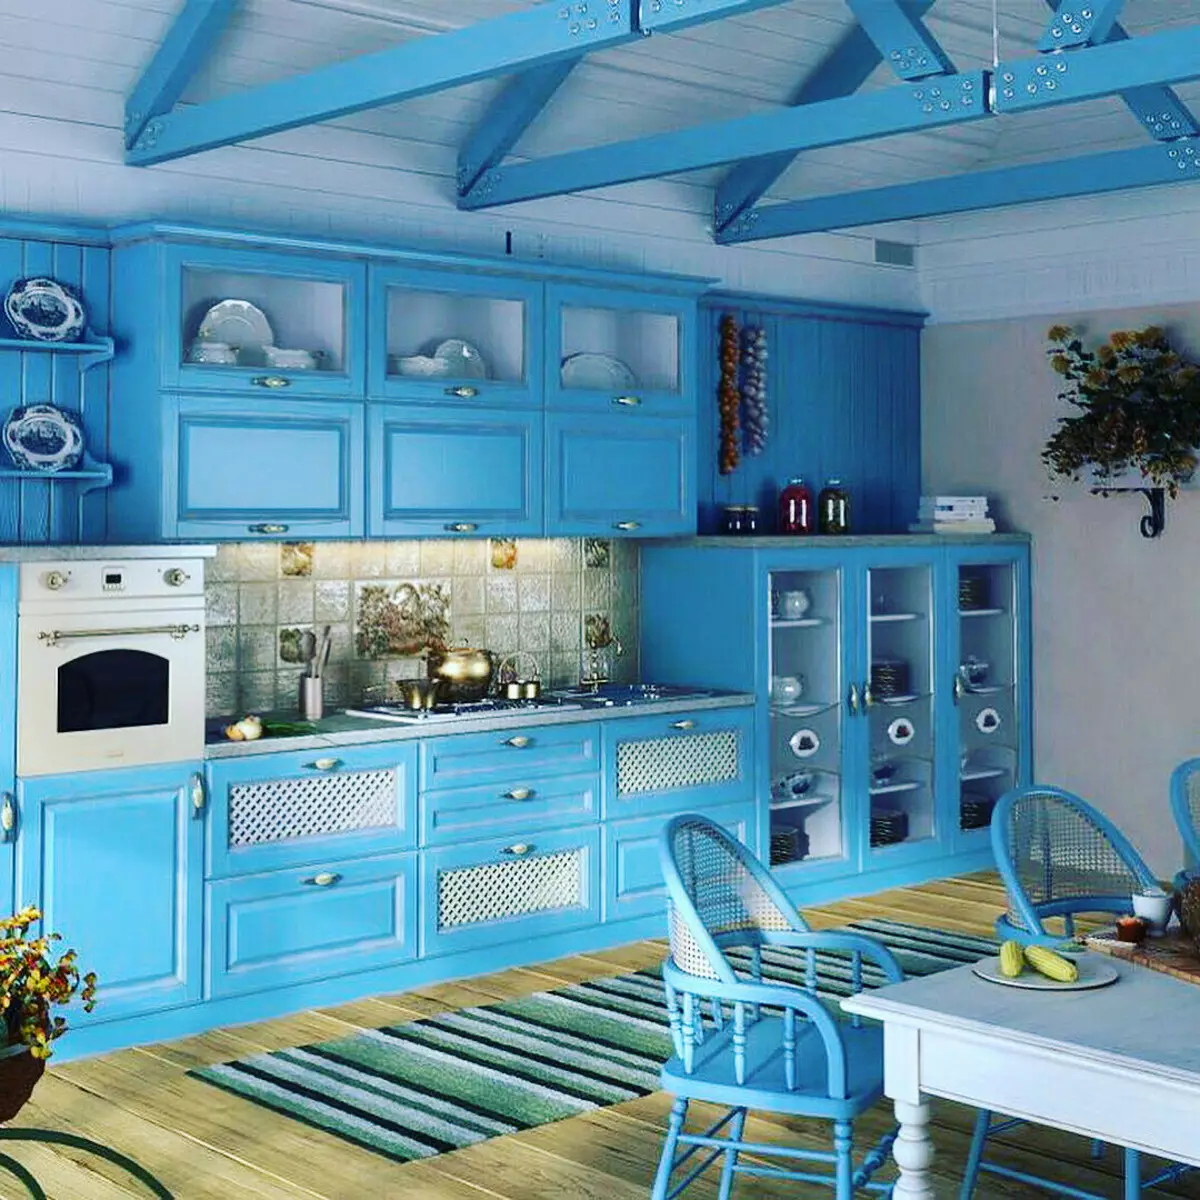 藍廚房（82張照片）：在藍色廚房套裝內部合併哪種顏色？淺藍色和深藍色色調的廚房設計 9555_58